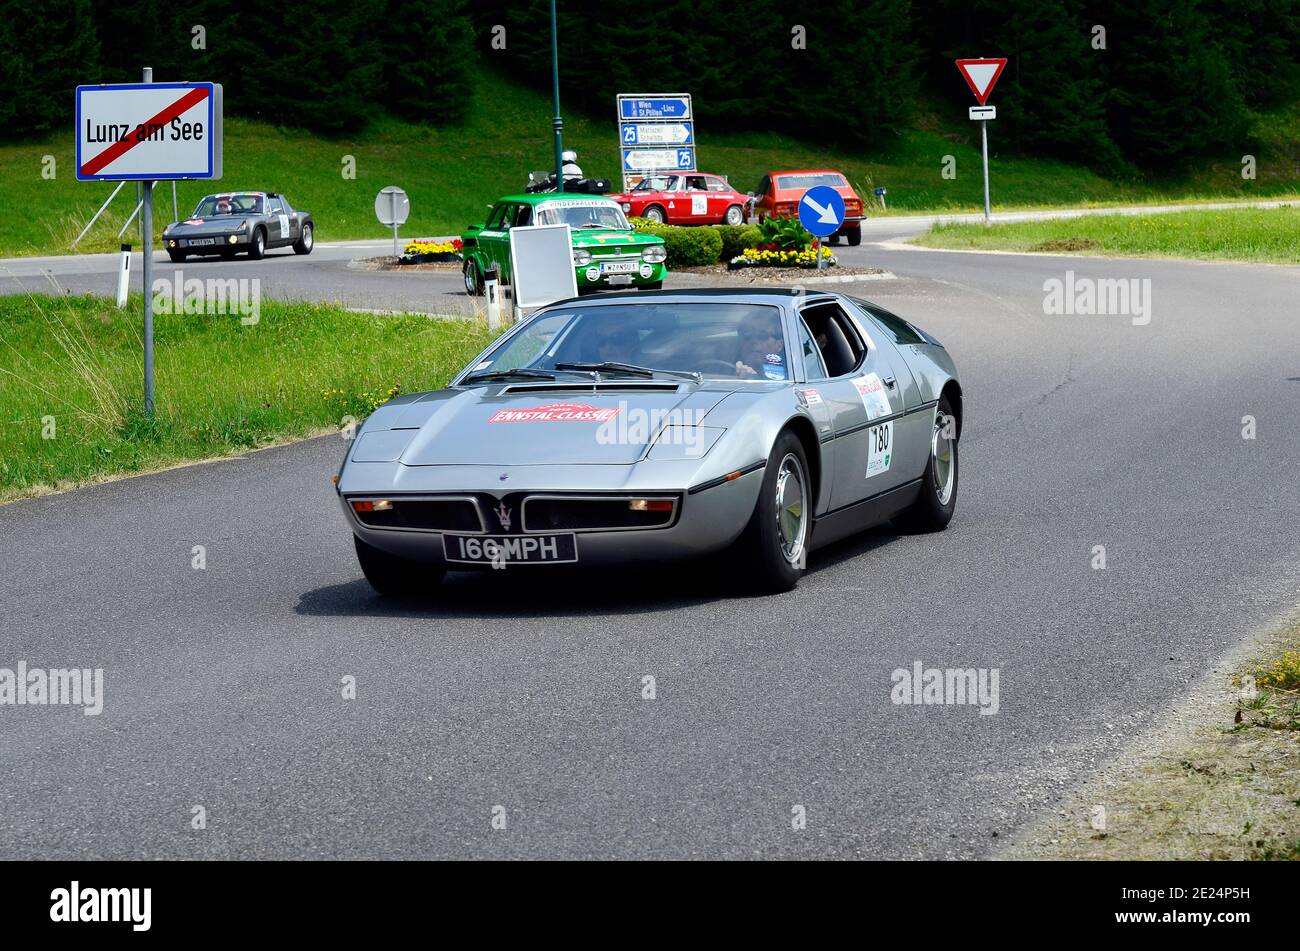 Lunz am See, Austria - 19 luglio 2013: Maserati Bora e NSU TT alle spalle sul palco speciale di International Ennstal Classic 2013, un torneo annuale tro Foto Stock